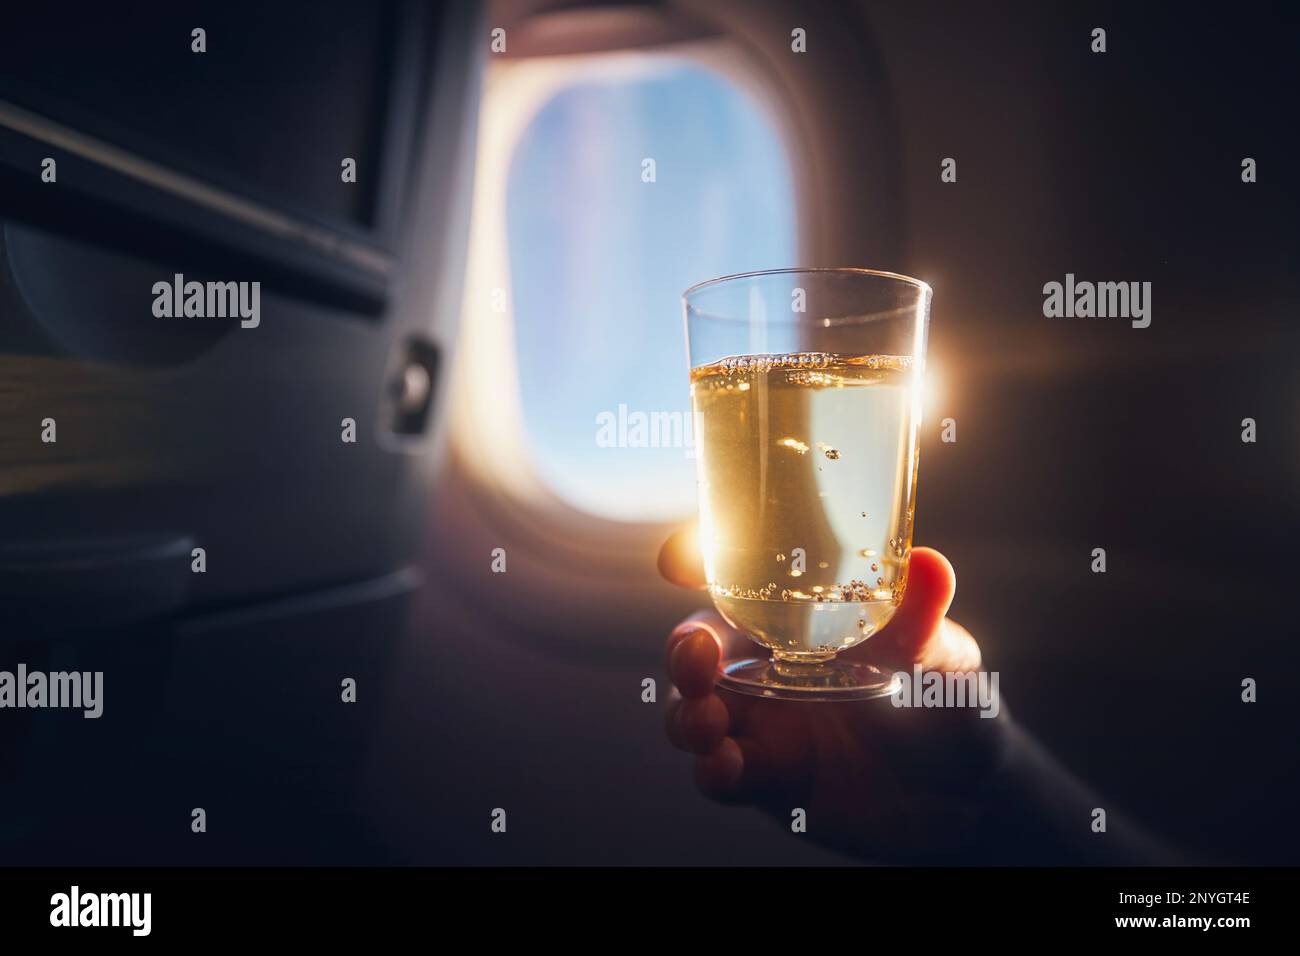 Ein Mann, der während des Fluges etwas trinkt. Passagier hält ein Glas Sekt gegen das Flugzeugfenster. Stockfoto